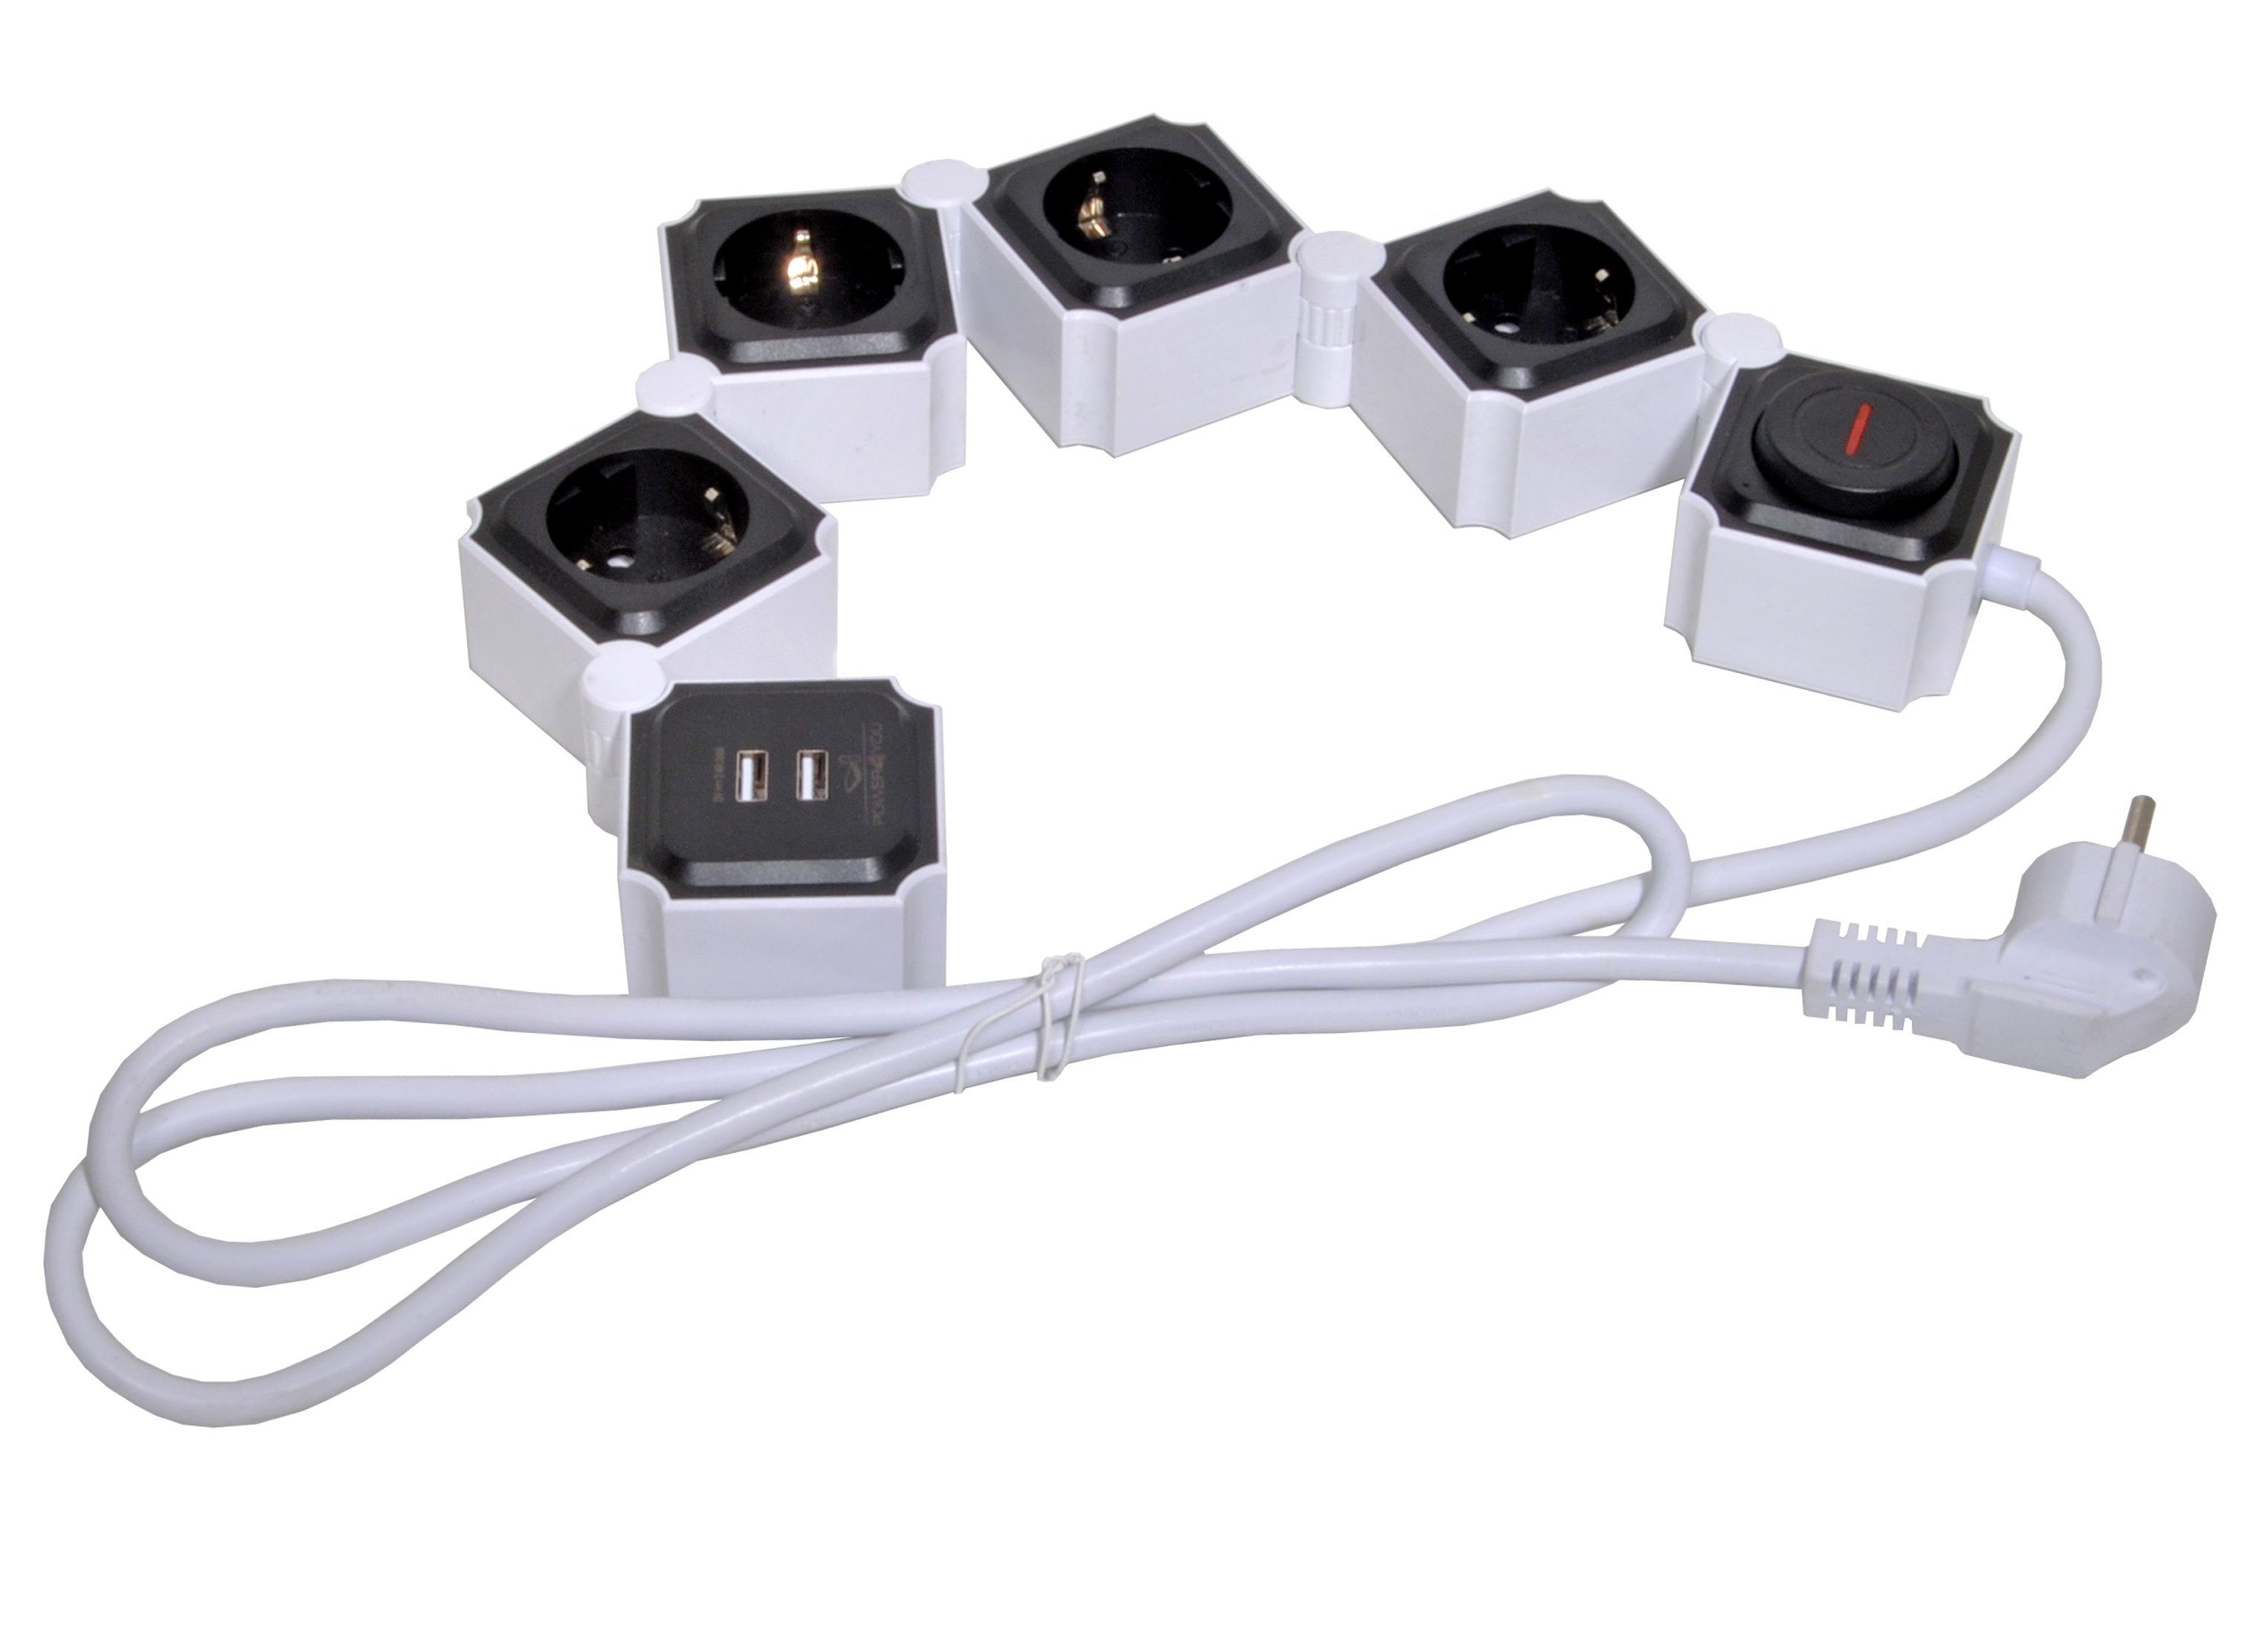 / Ausschalter, Mehrfachsteckdose schwarz Schalter / (4,2A) Flexible x 1,5M USB-Anschlüsse, 12w 2 Schalterbeleuchtung, Ein- x 2 separate 4-fach Ausschalter, inkl. USB (Ein- Schwaiger USB kabel), Einsatz, Steckdosenleiste Mehrfachstecker